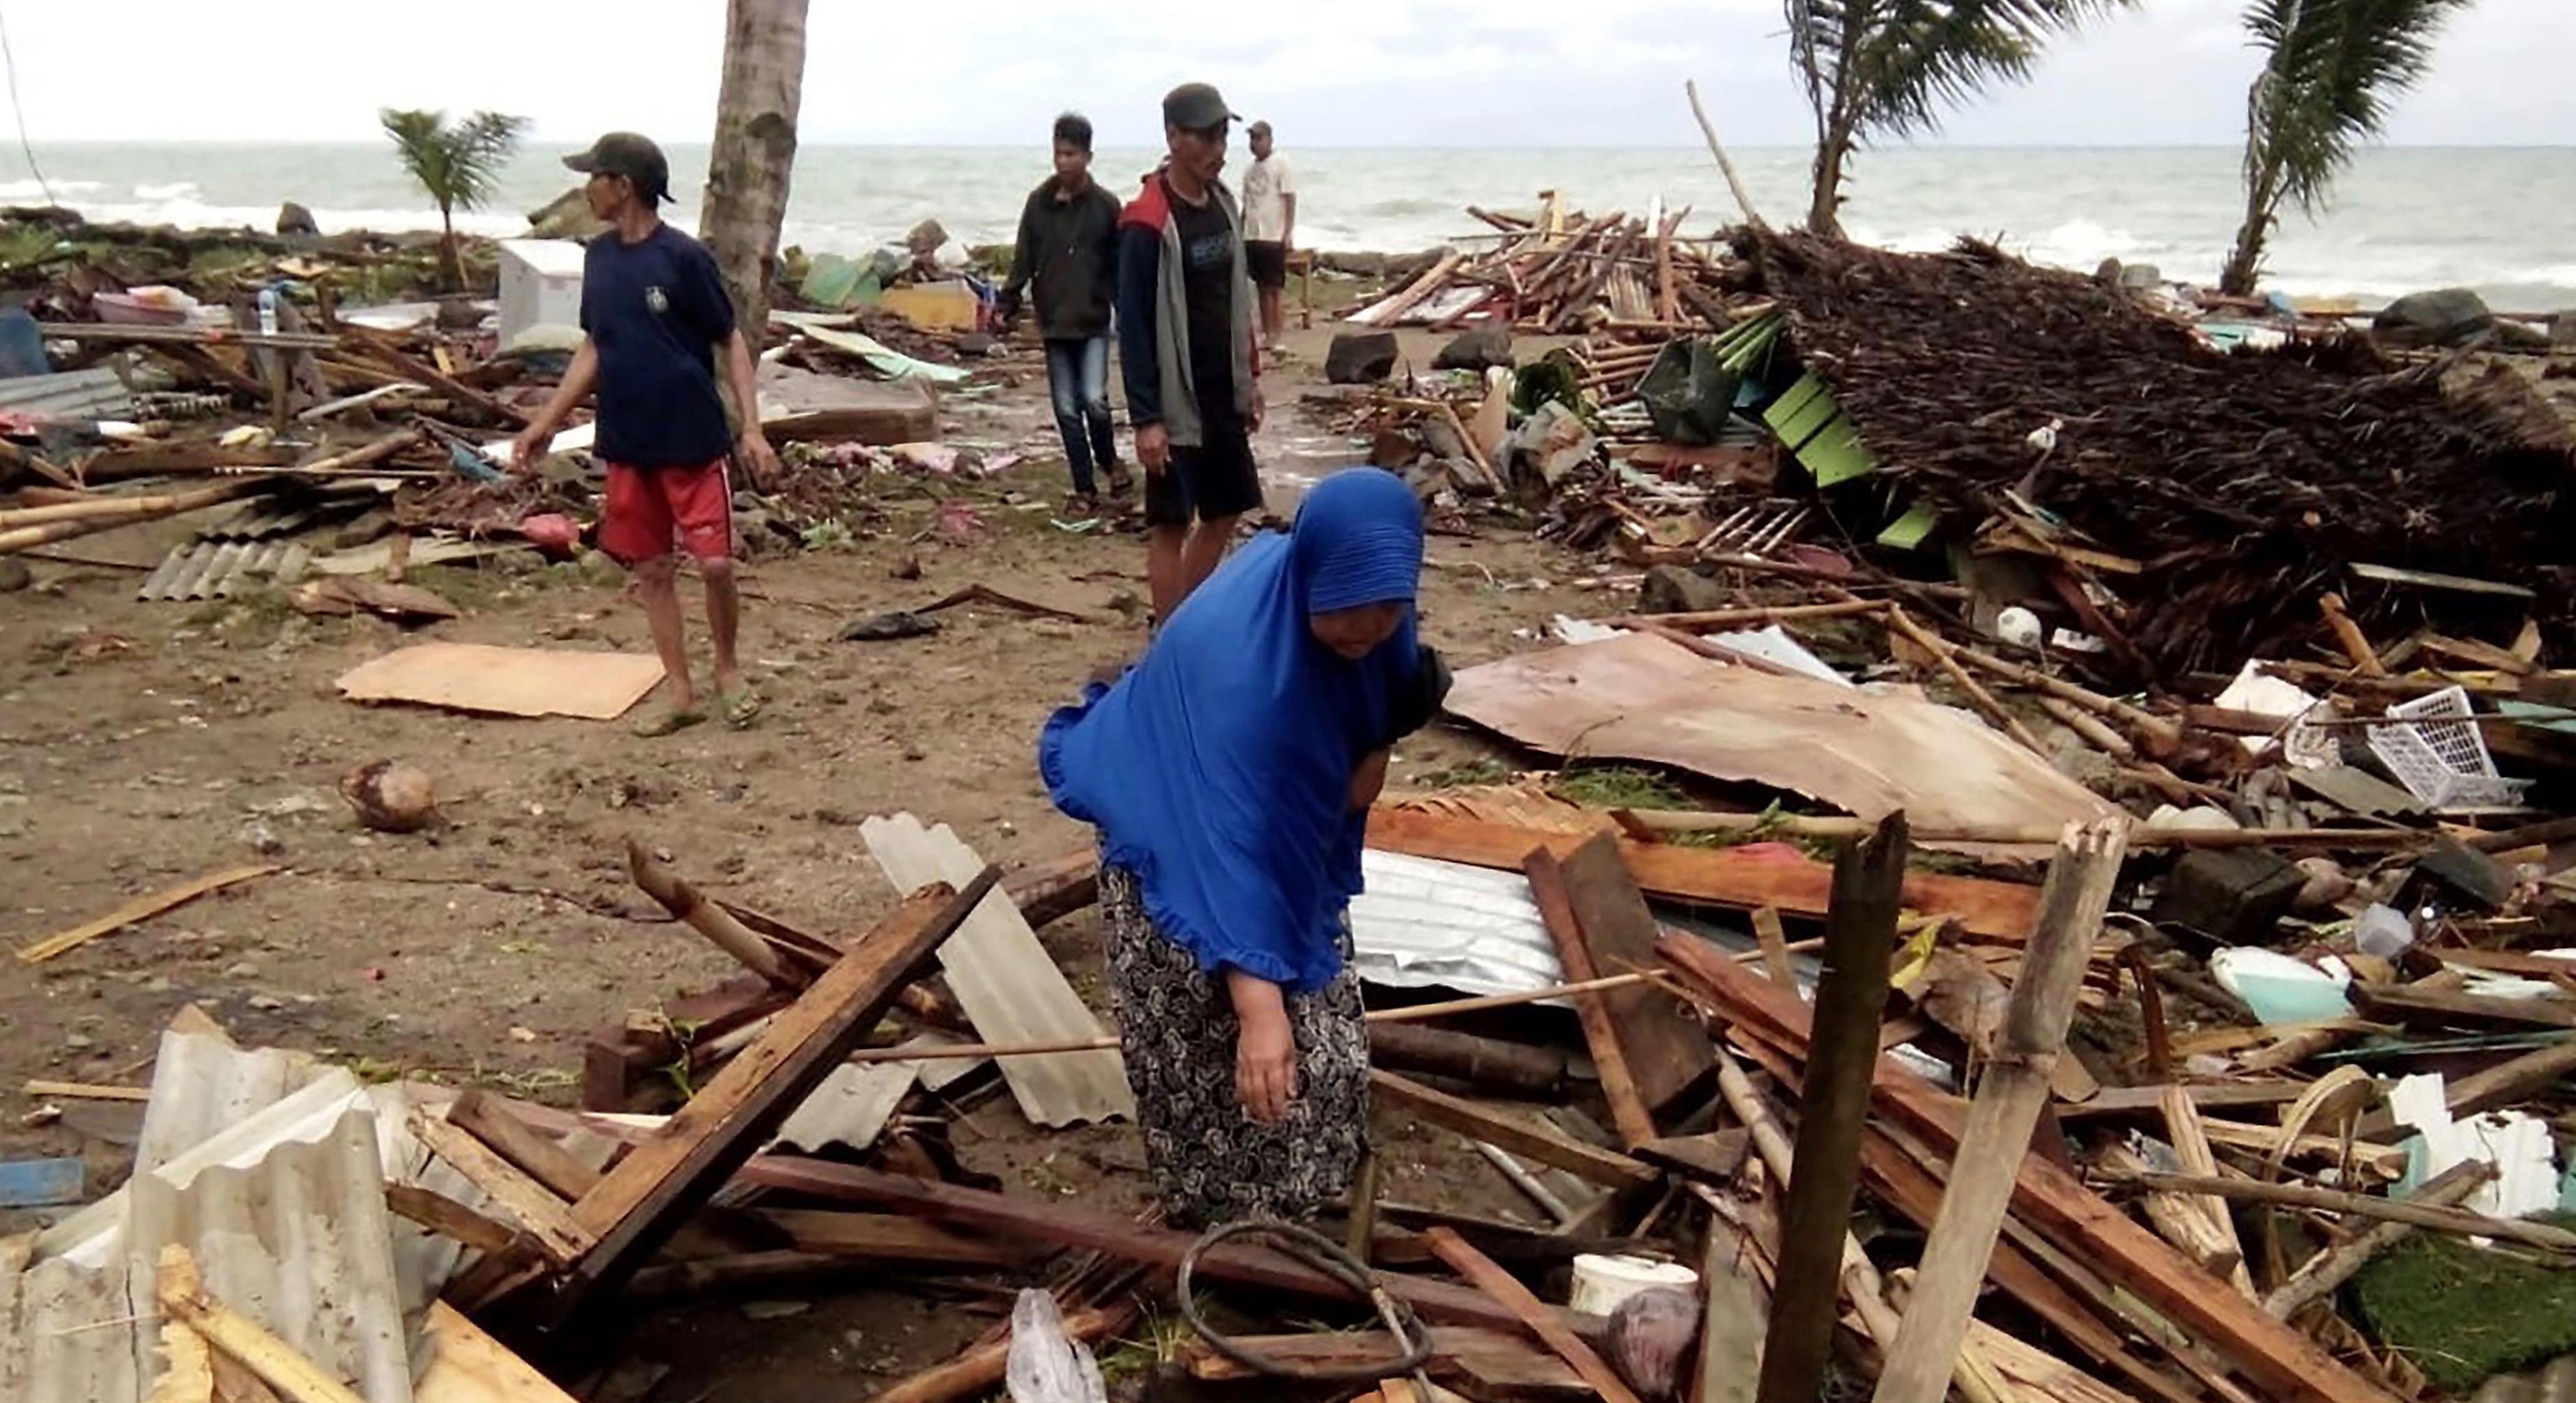 Bewohner inspizieren die Schäden an ihren Häusern am Strand von Carita, nachdem das Gebiet am 22. Dezember von einem Tsunami heimgesucht wurde.